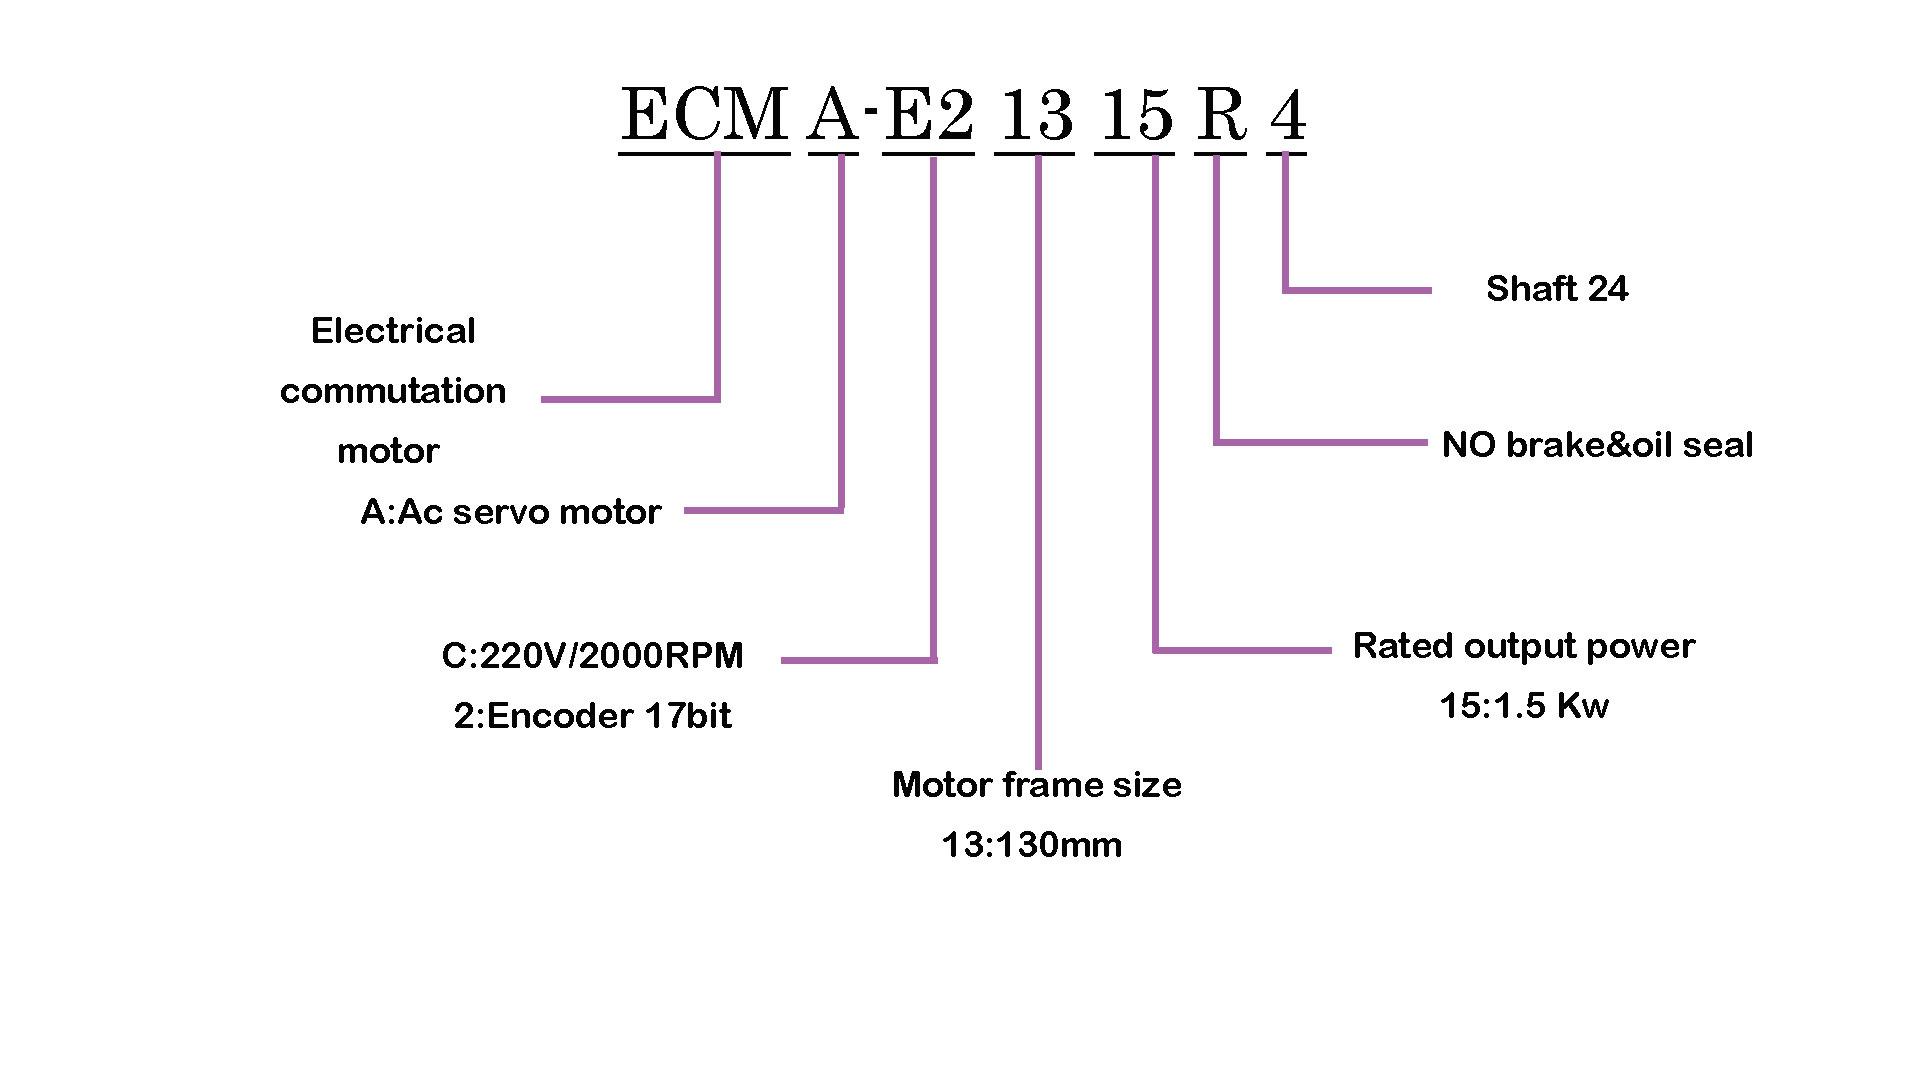 ECMA-E21315R4